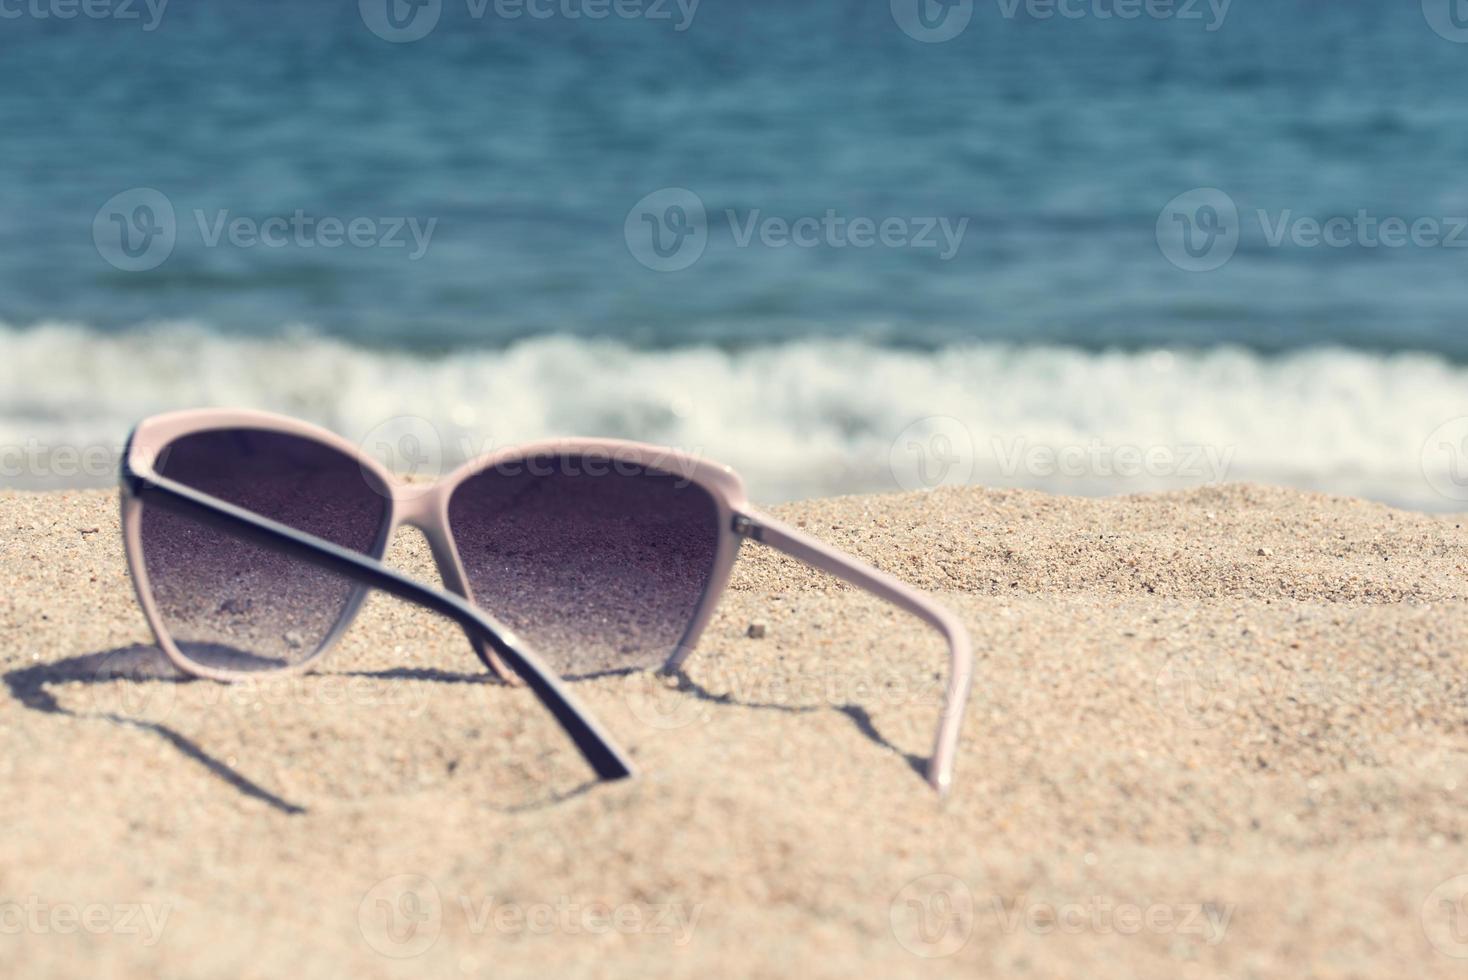 glasögon på stranden sanden foto